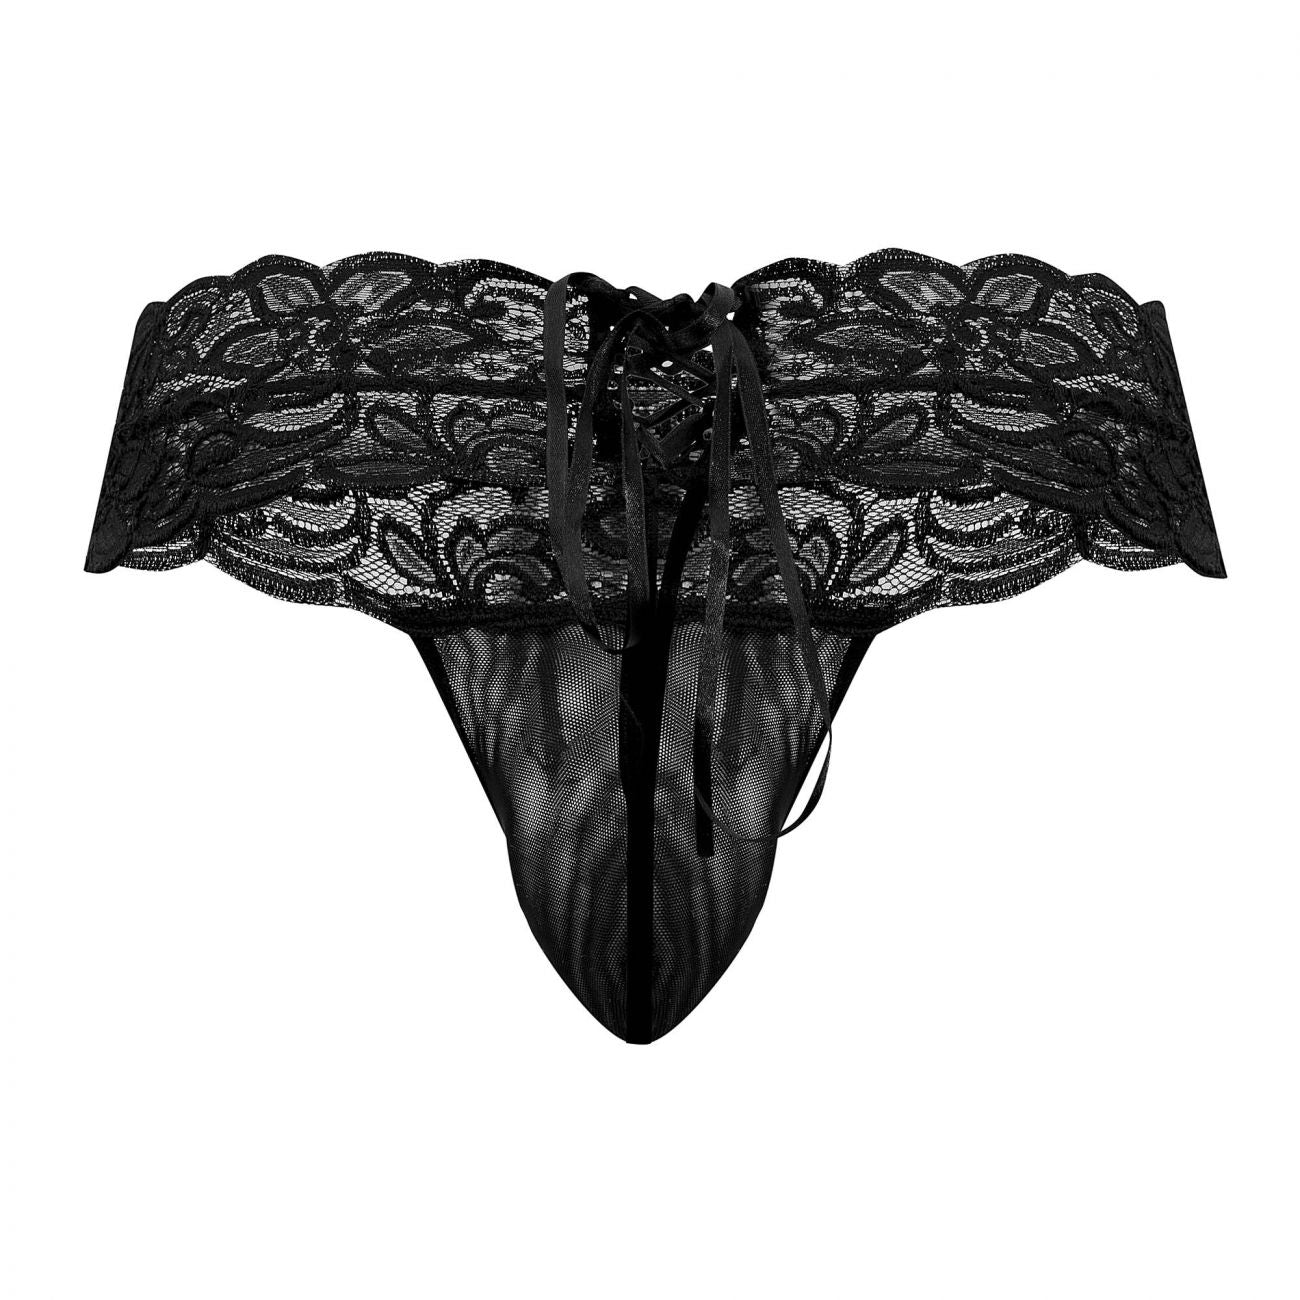 JCSTK - CandyMan 99595X Floral Lace Thongs Black Plus Sizes